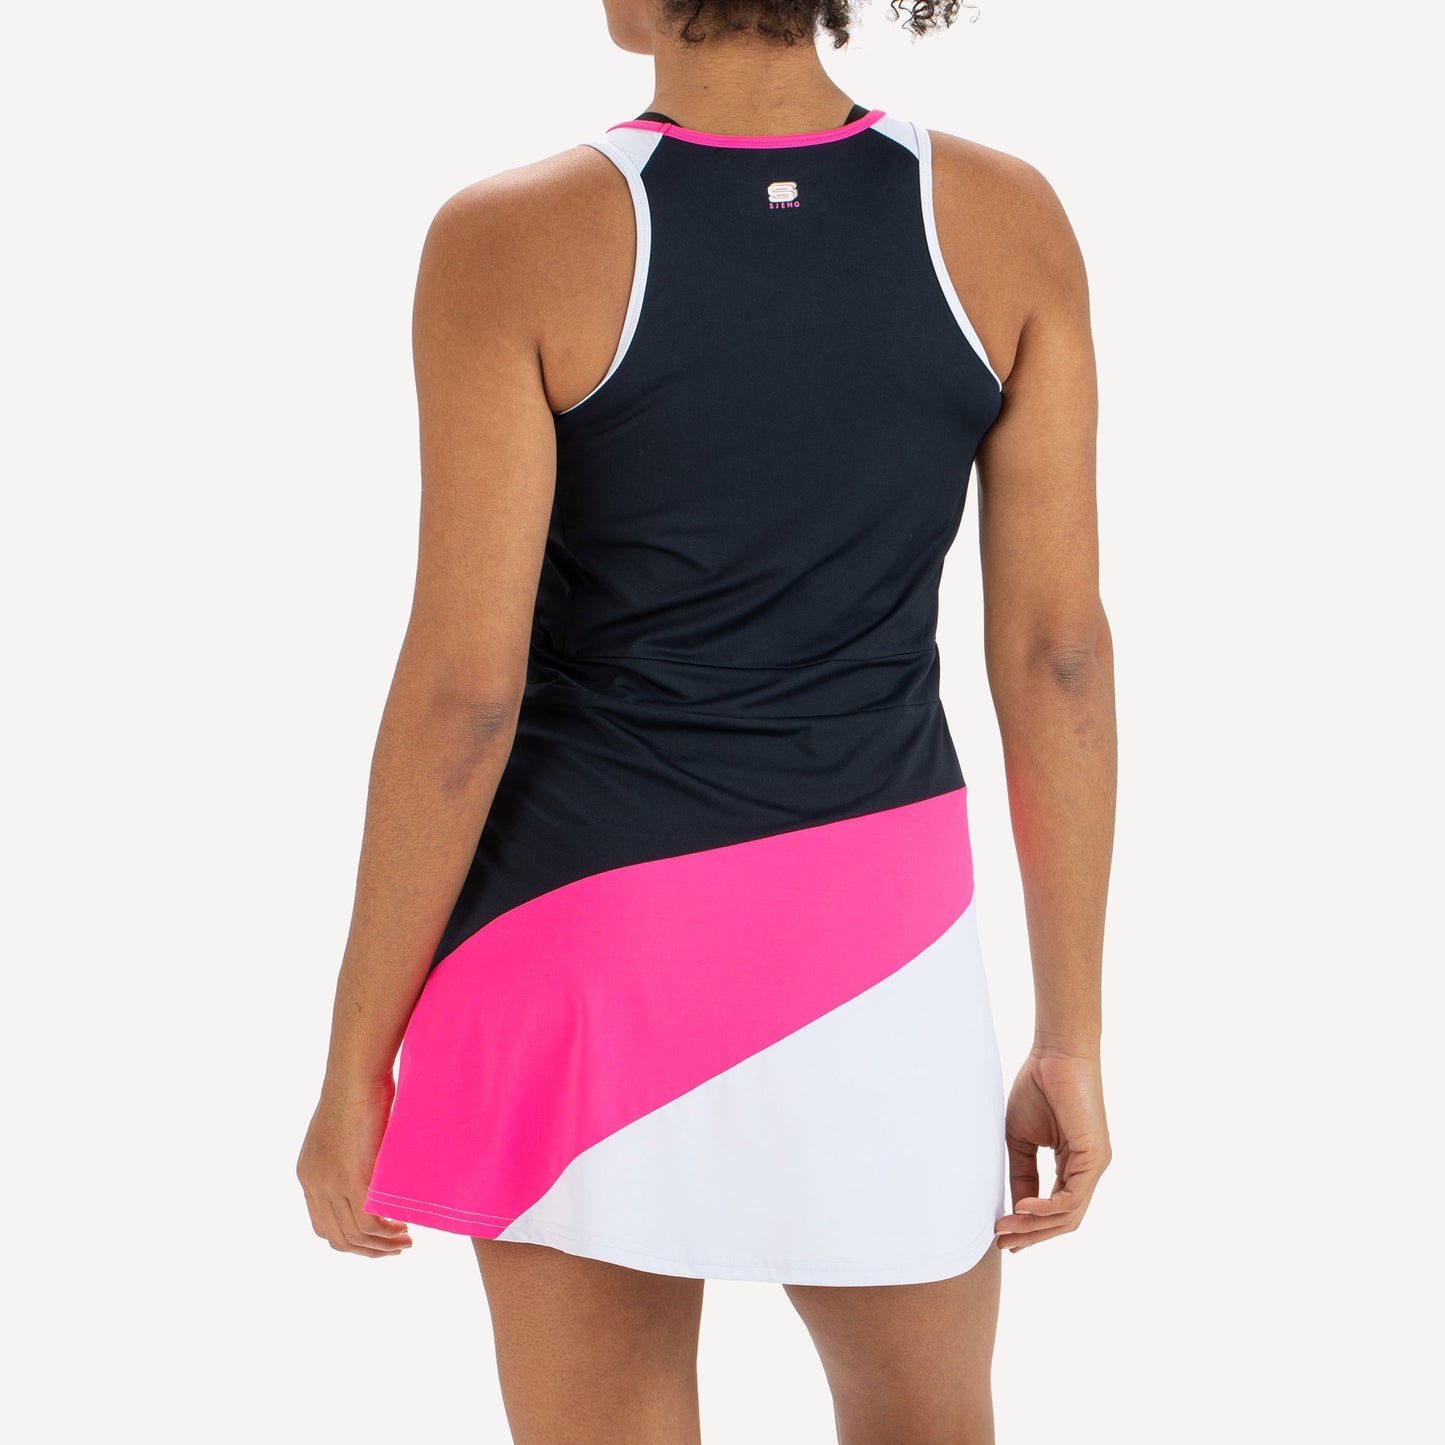 Sjeng Sports Elianne Women's Tennis Dress Pink (2)